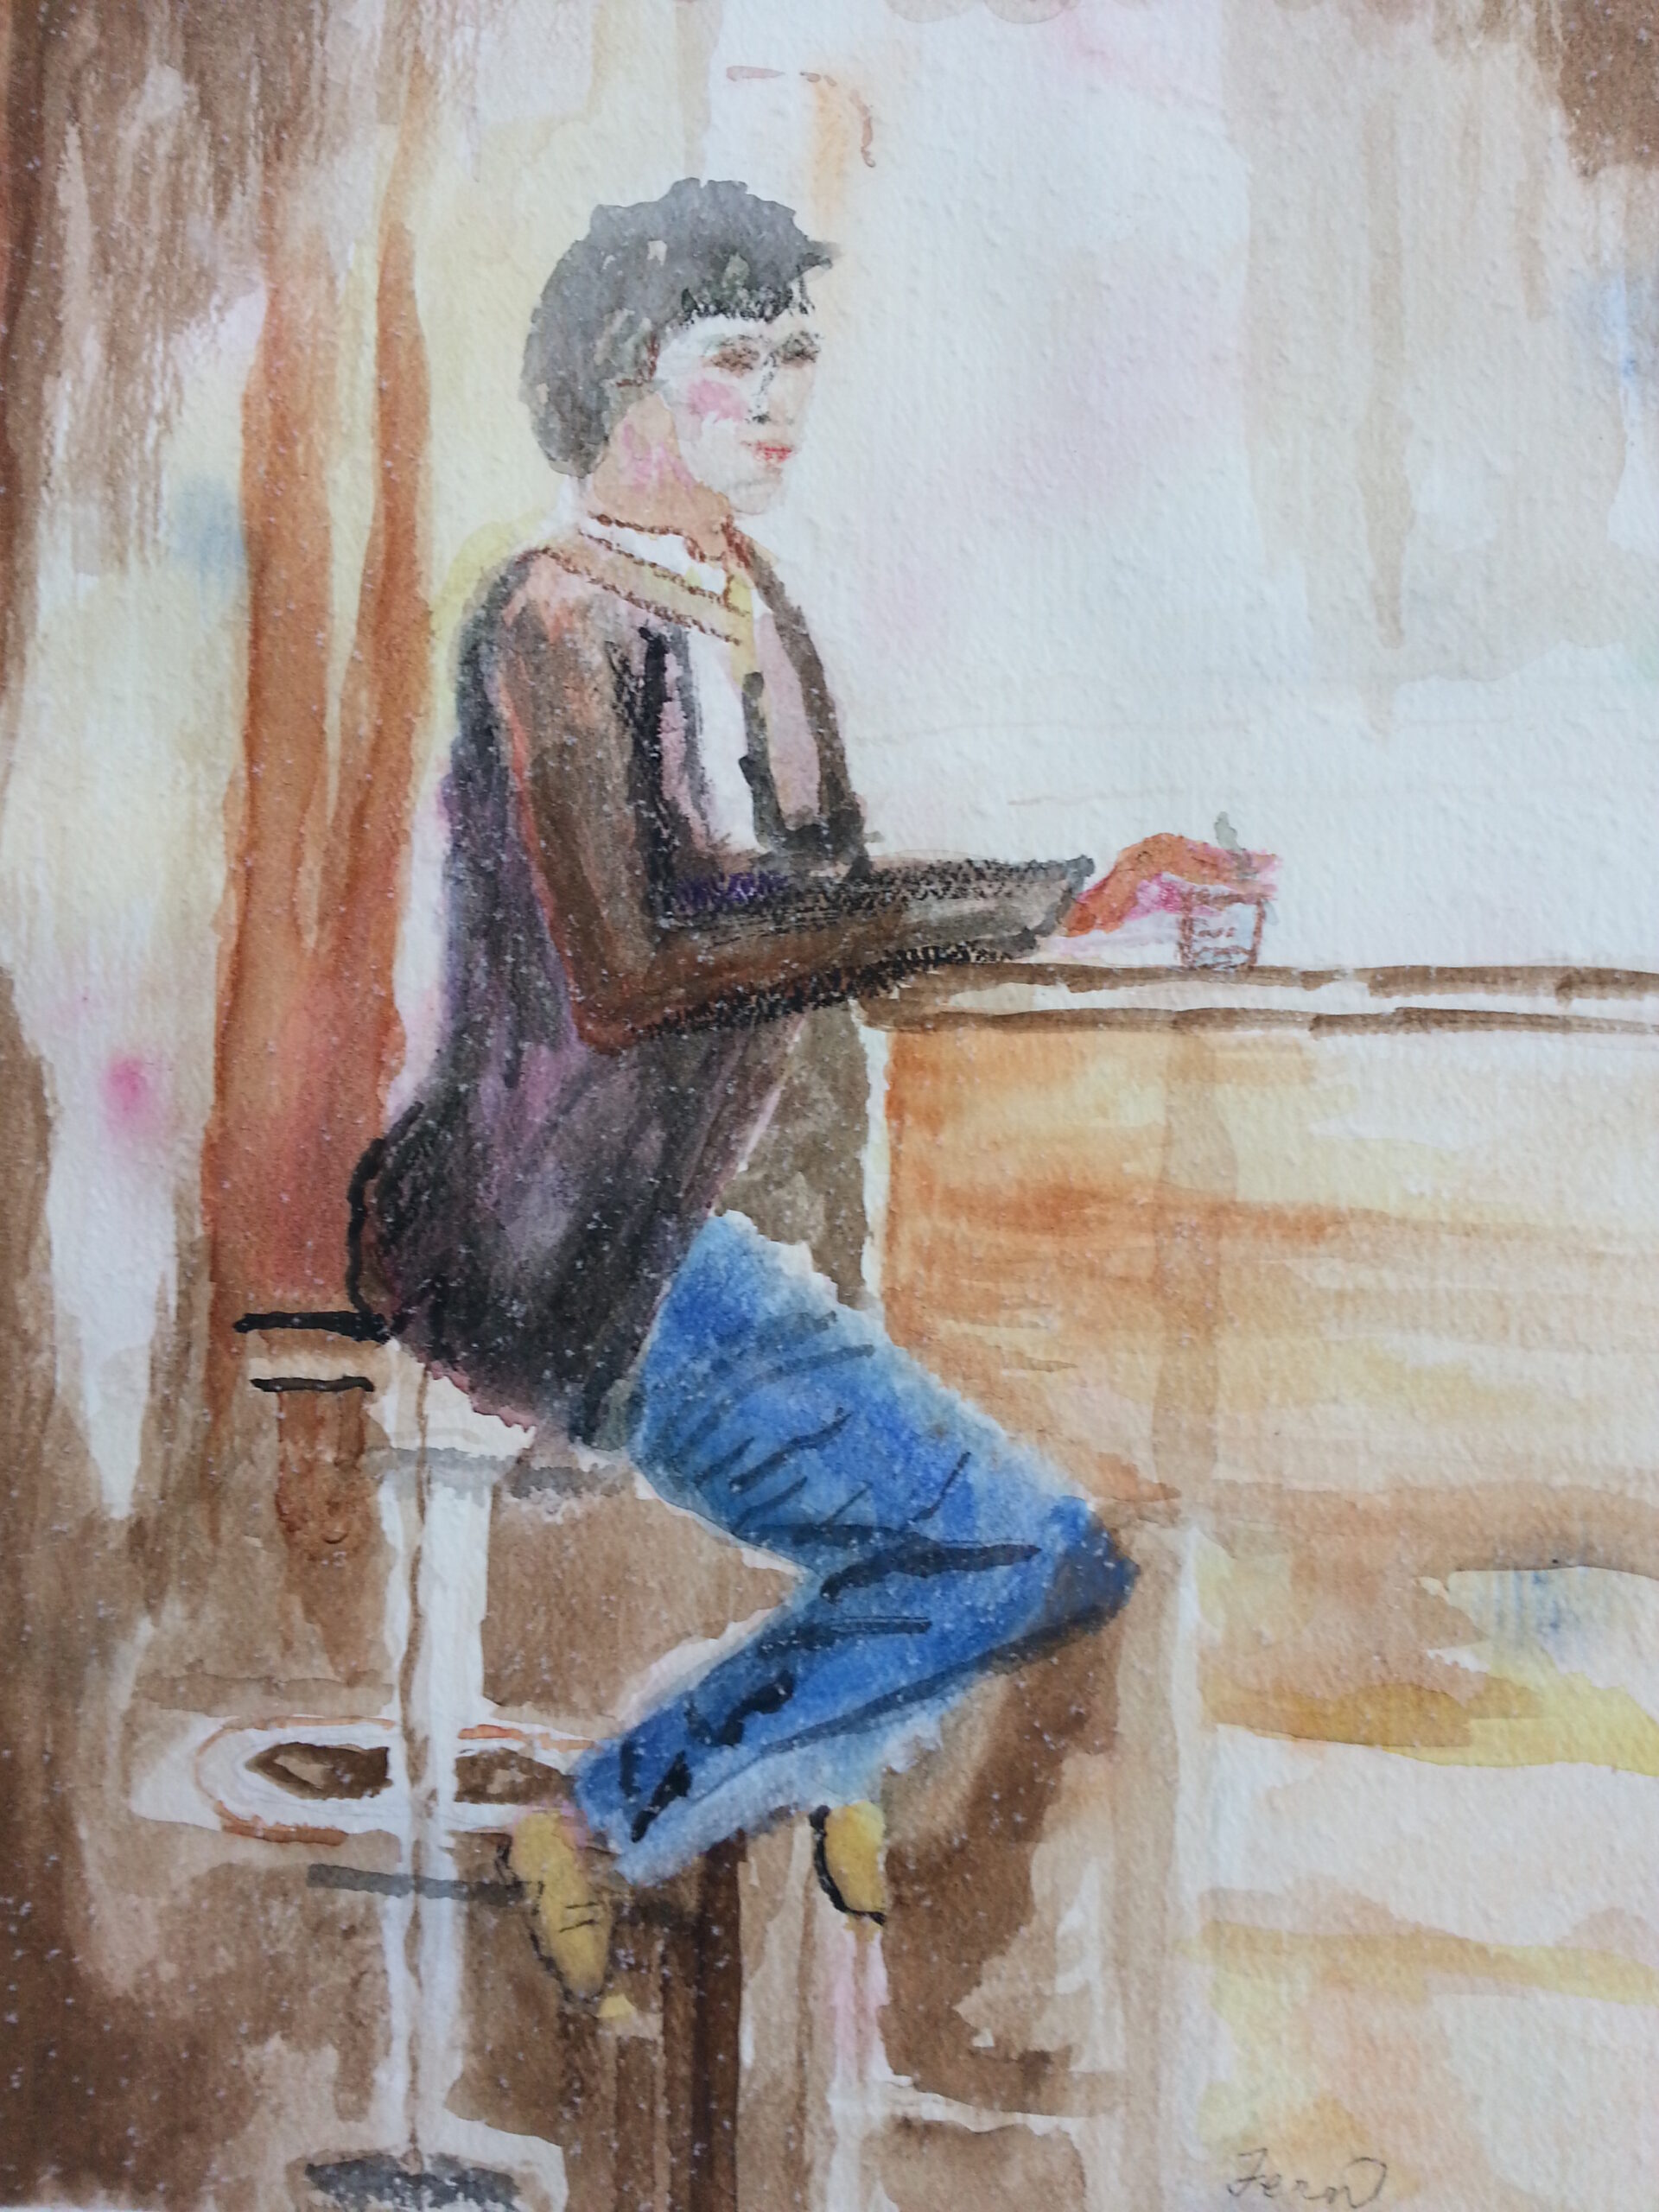 Watercolor of a man sitting at a bar.